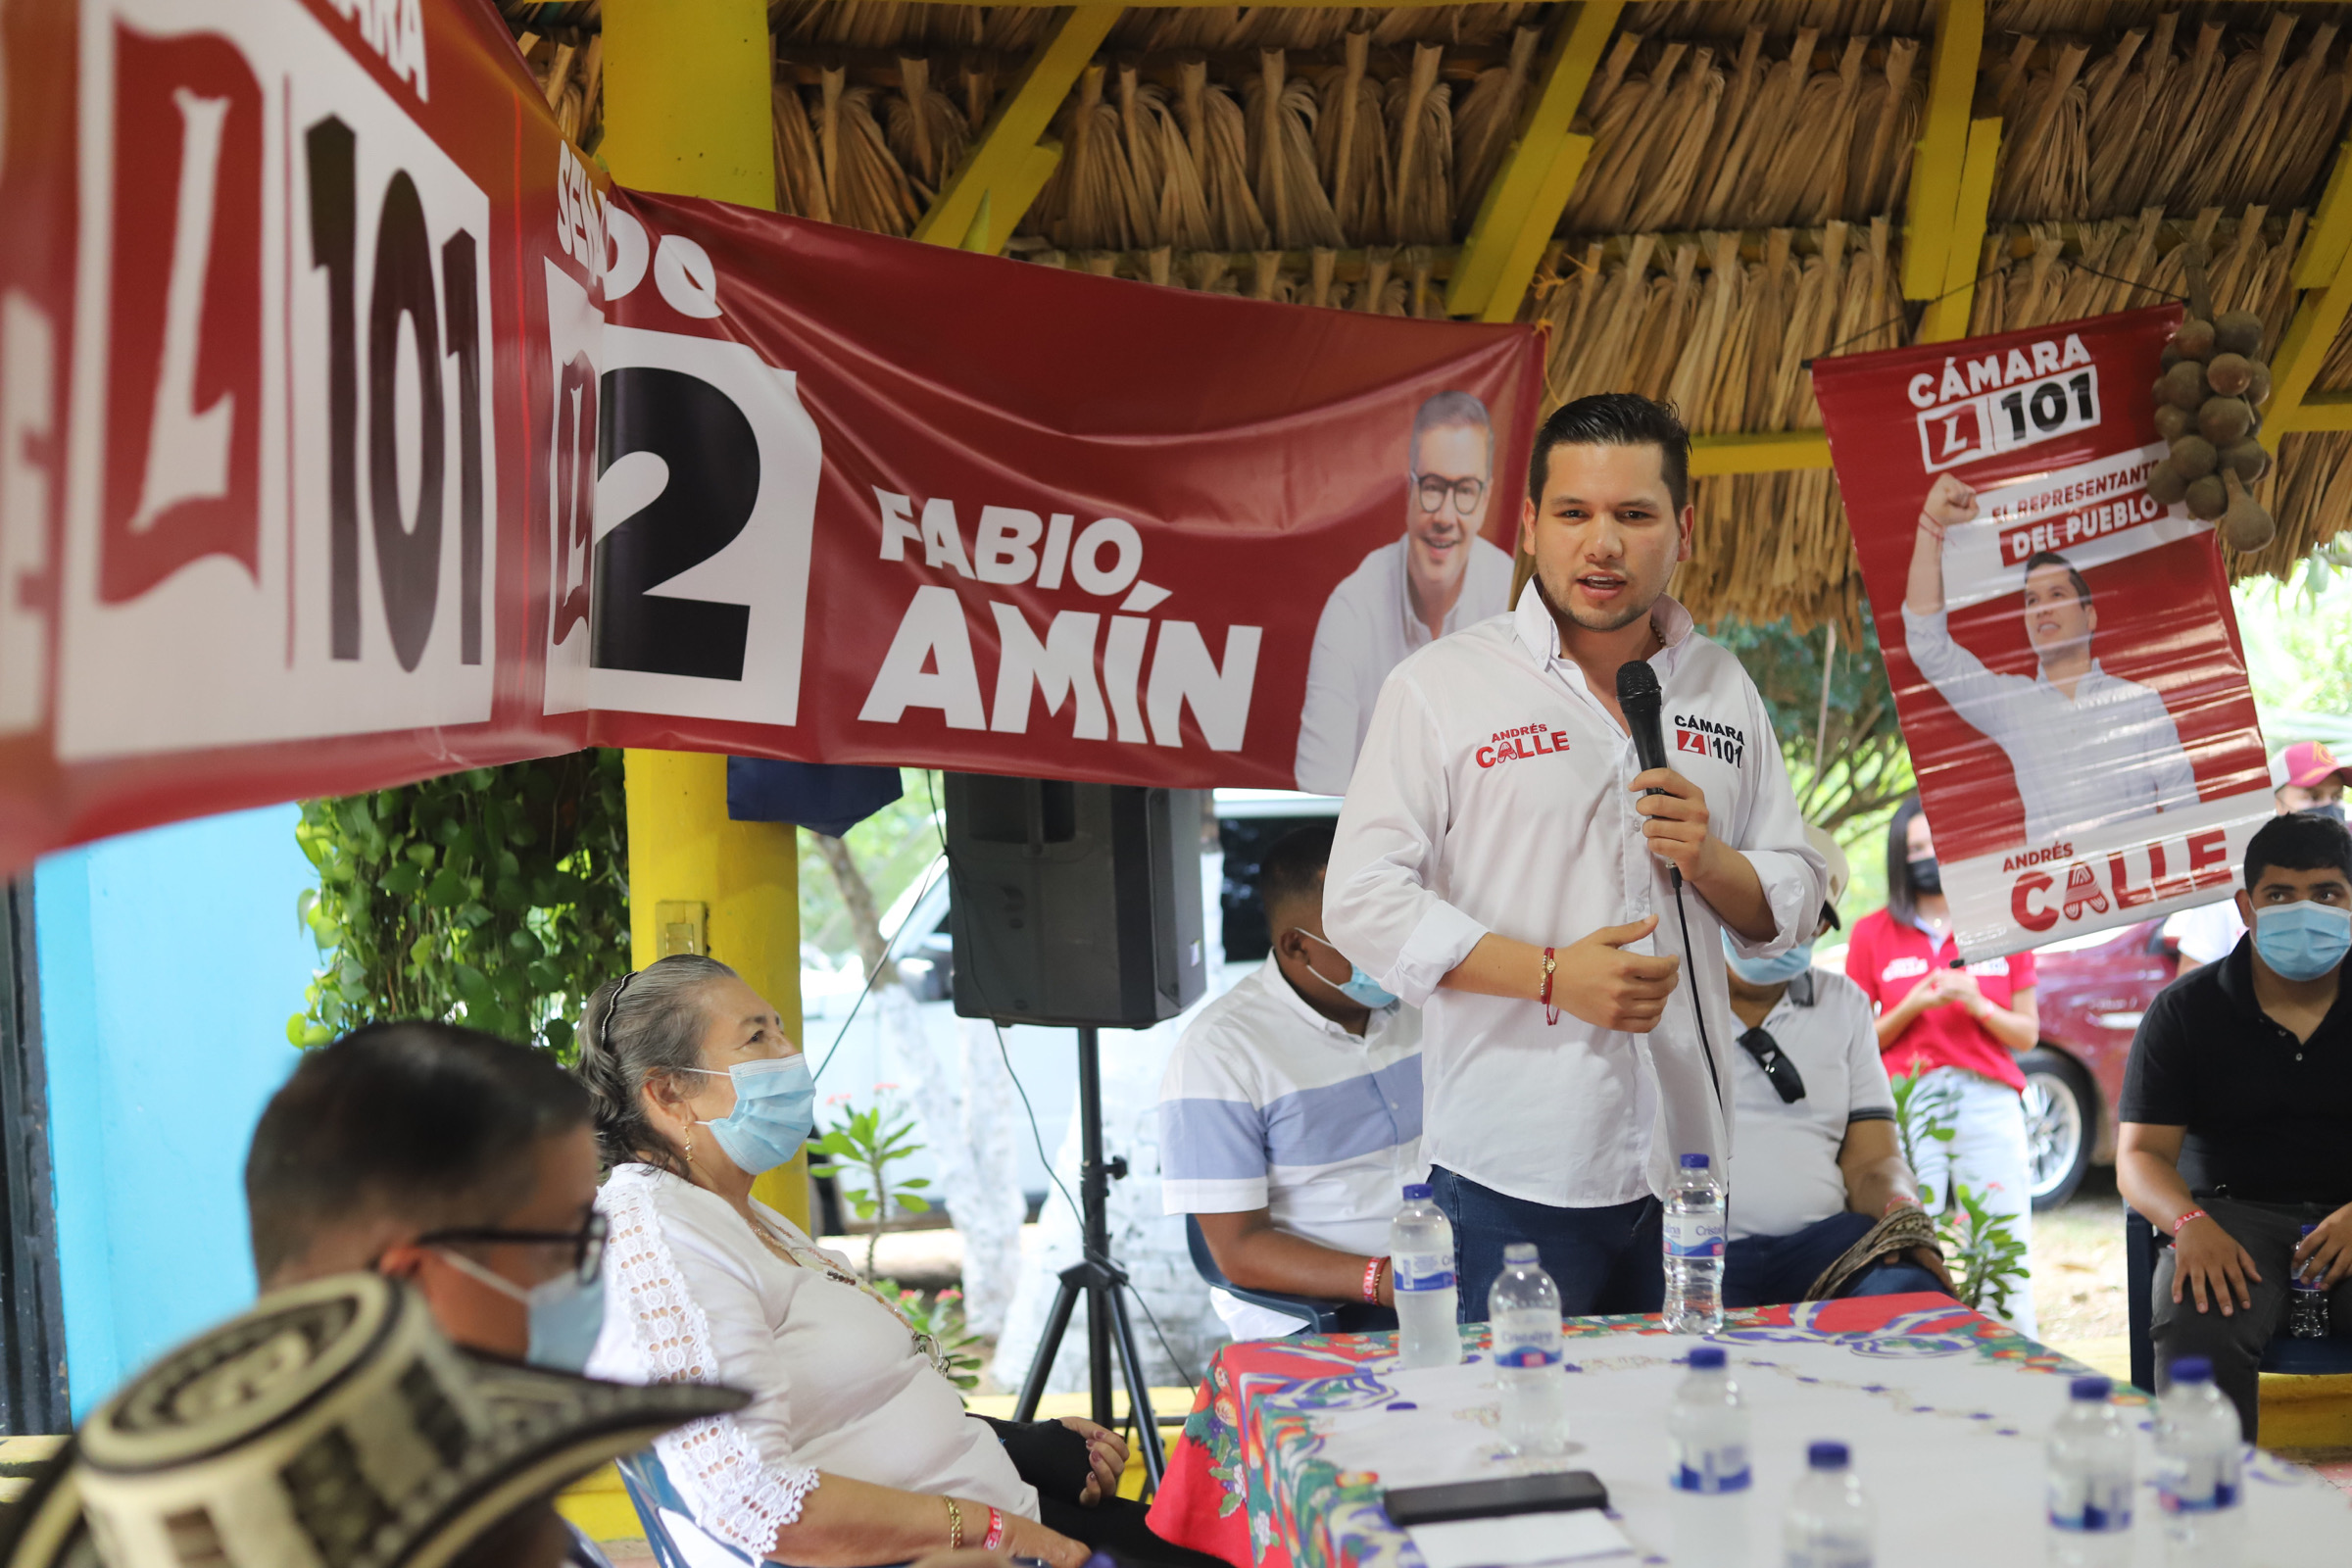 ¡Imparable! Dirigentes indígenas y políticos de San Andrés de Sotavento están con Calle